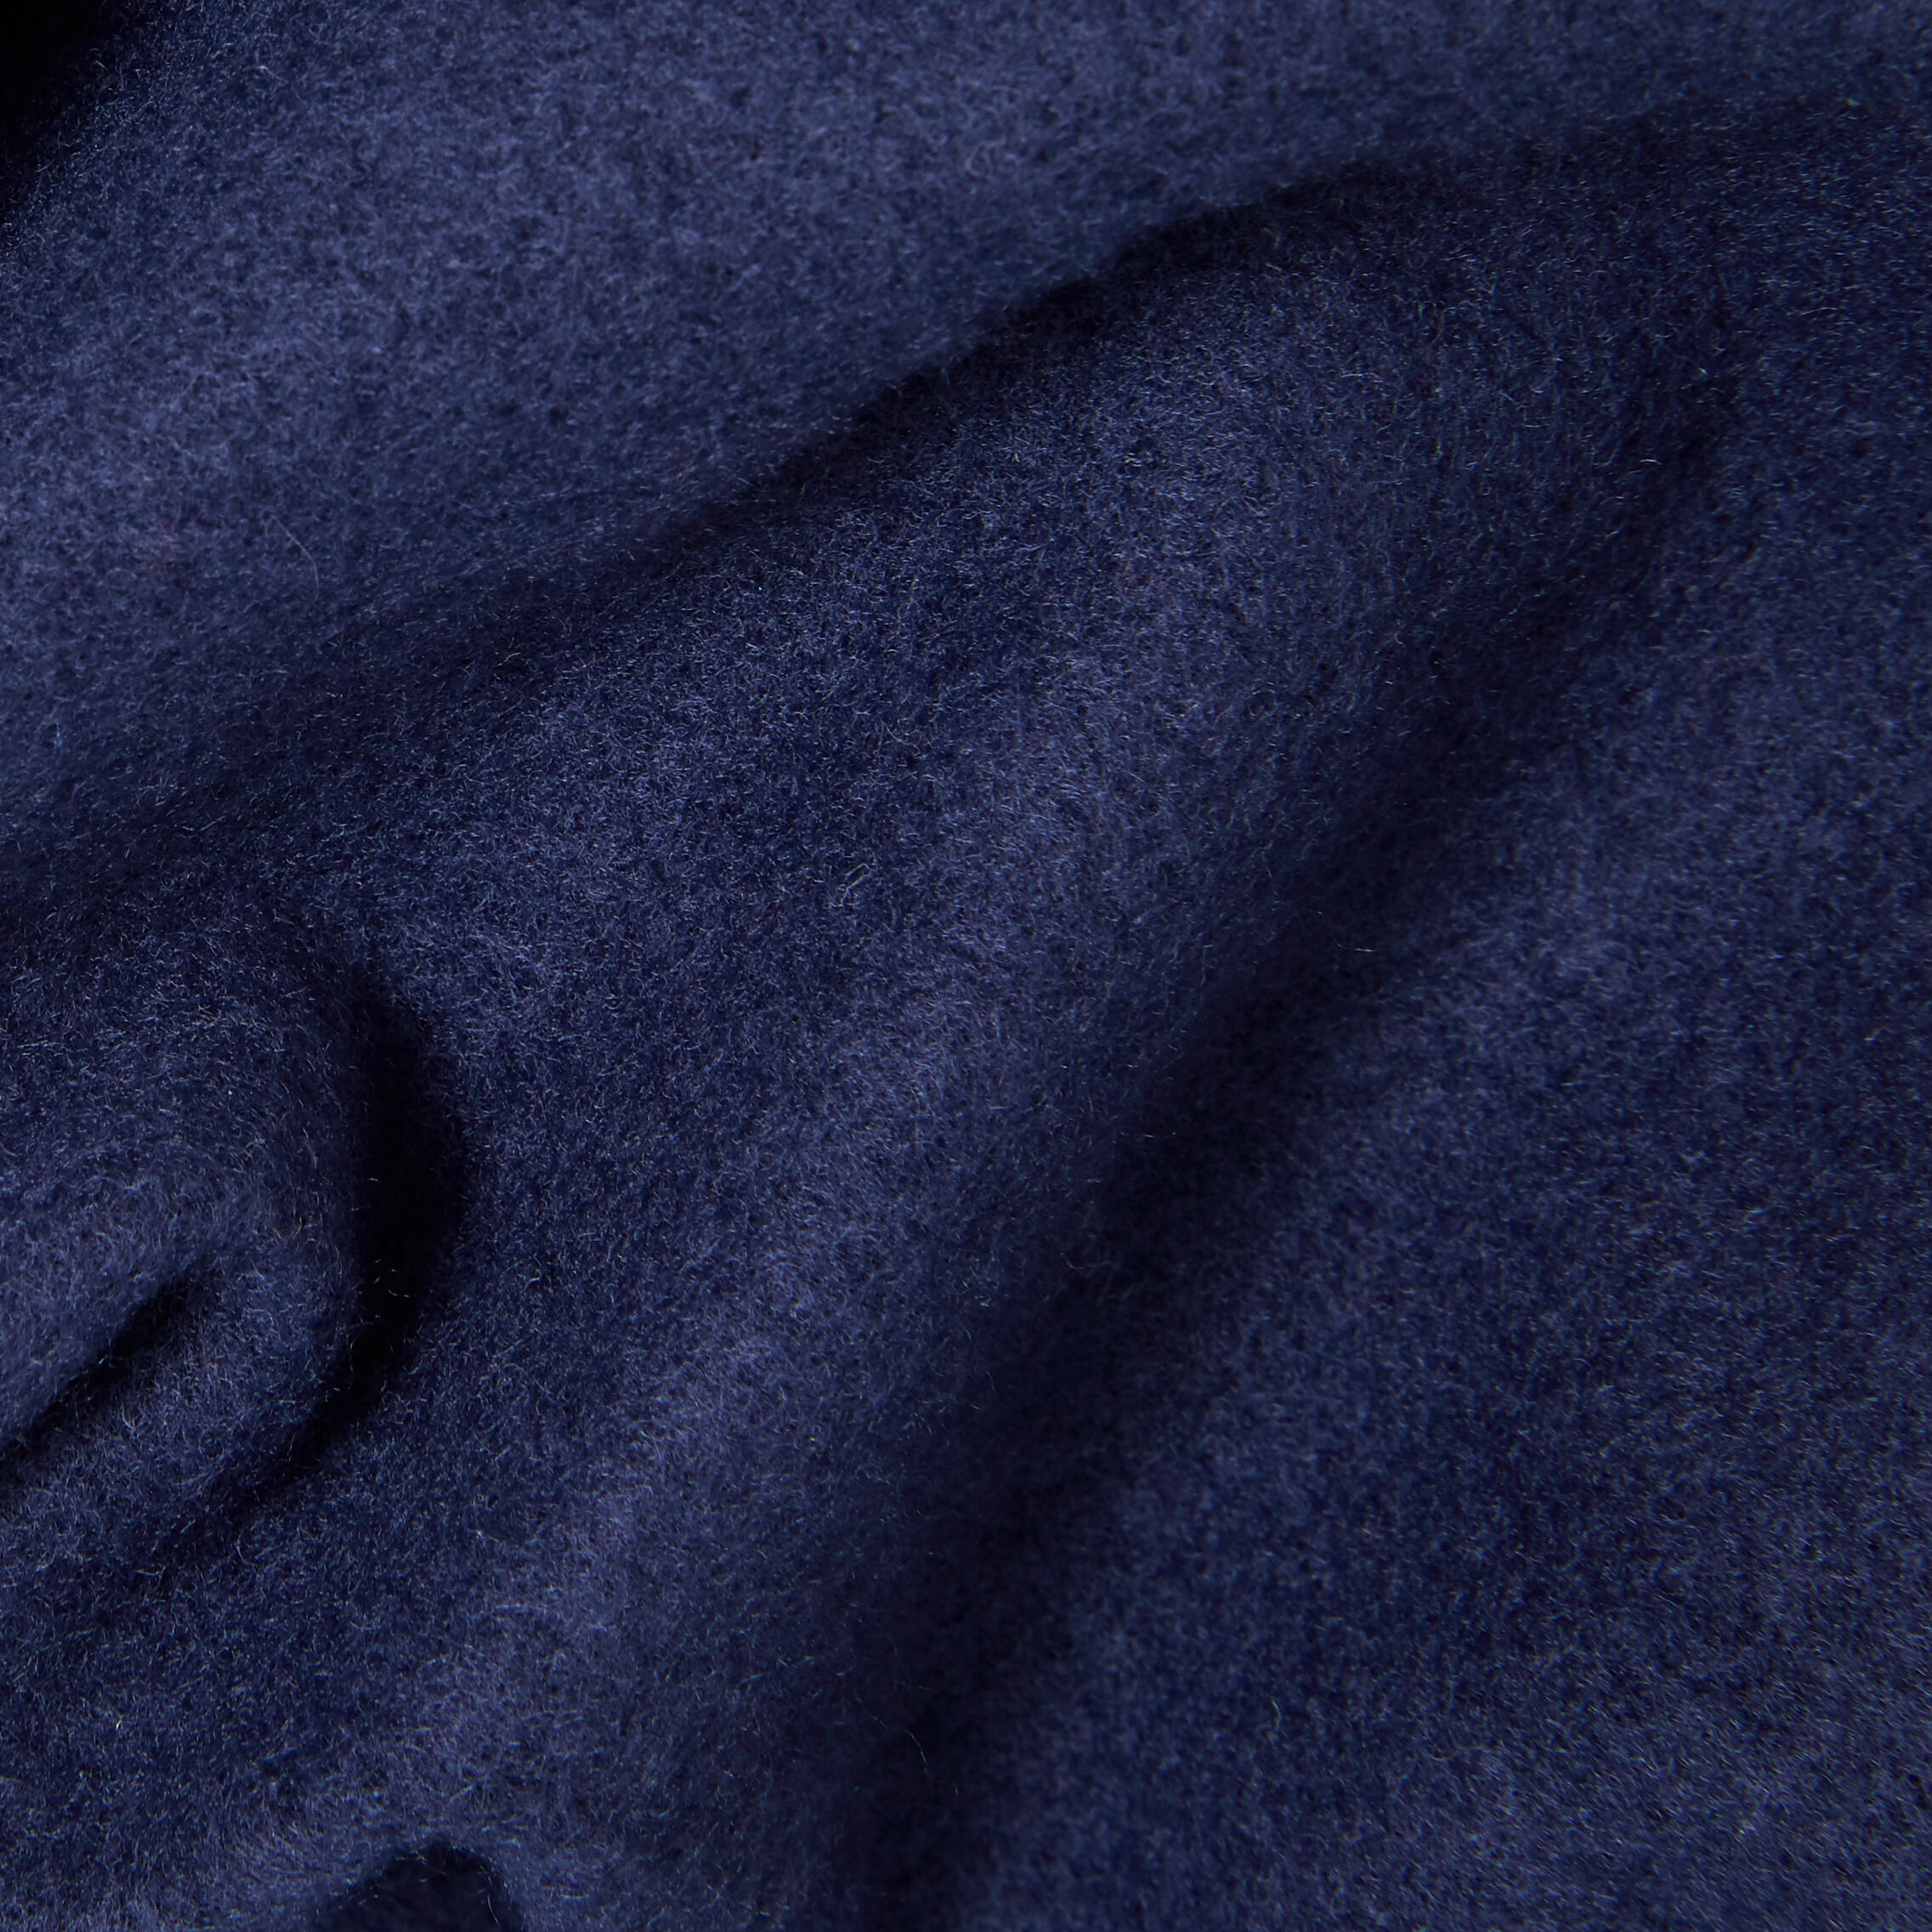 Chandail en coton ouaté enfant - bleu marine - DOMYOS